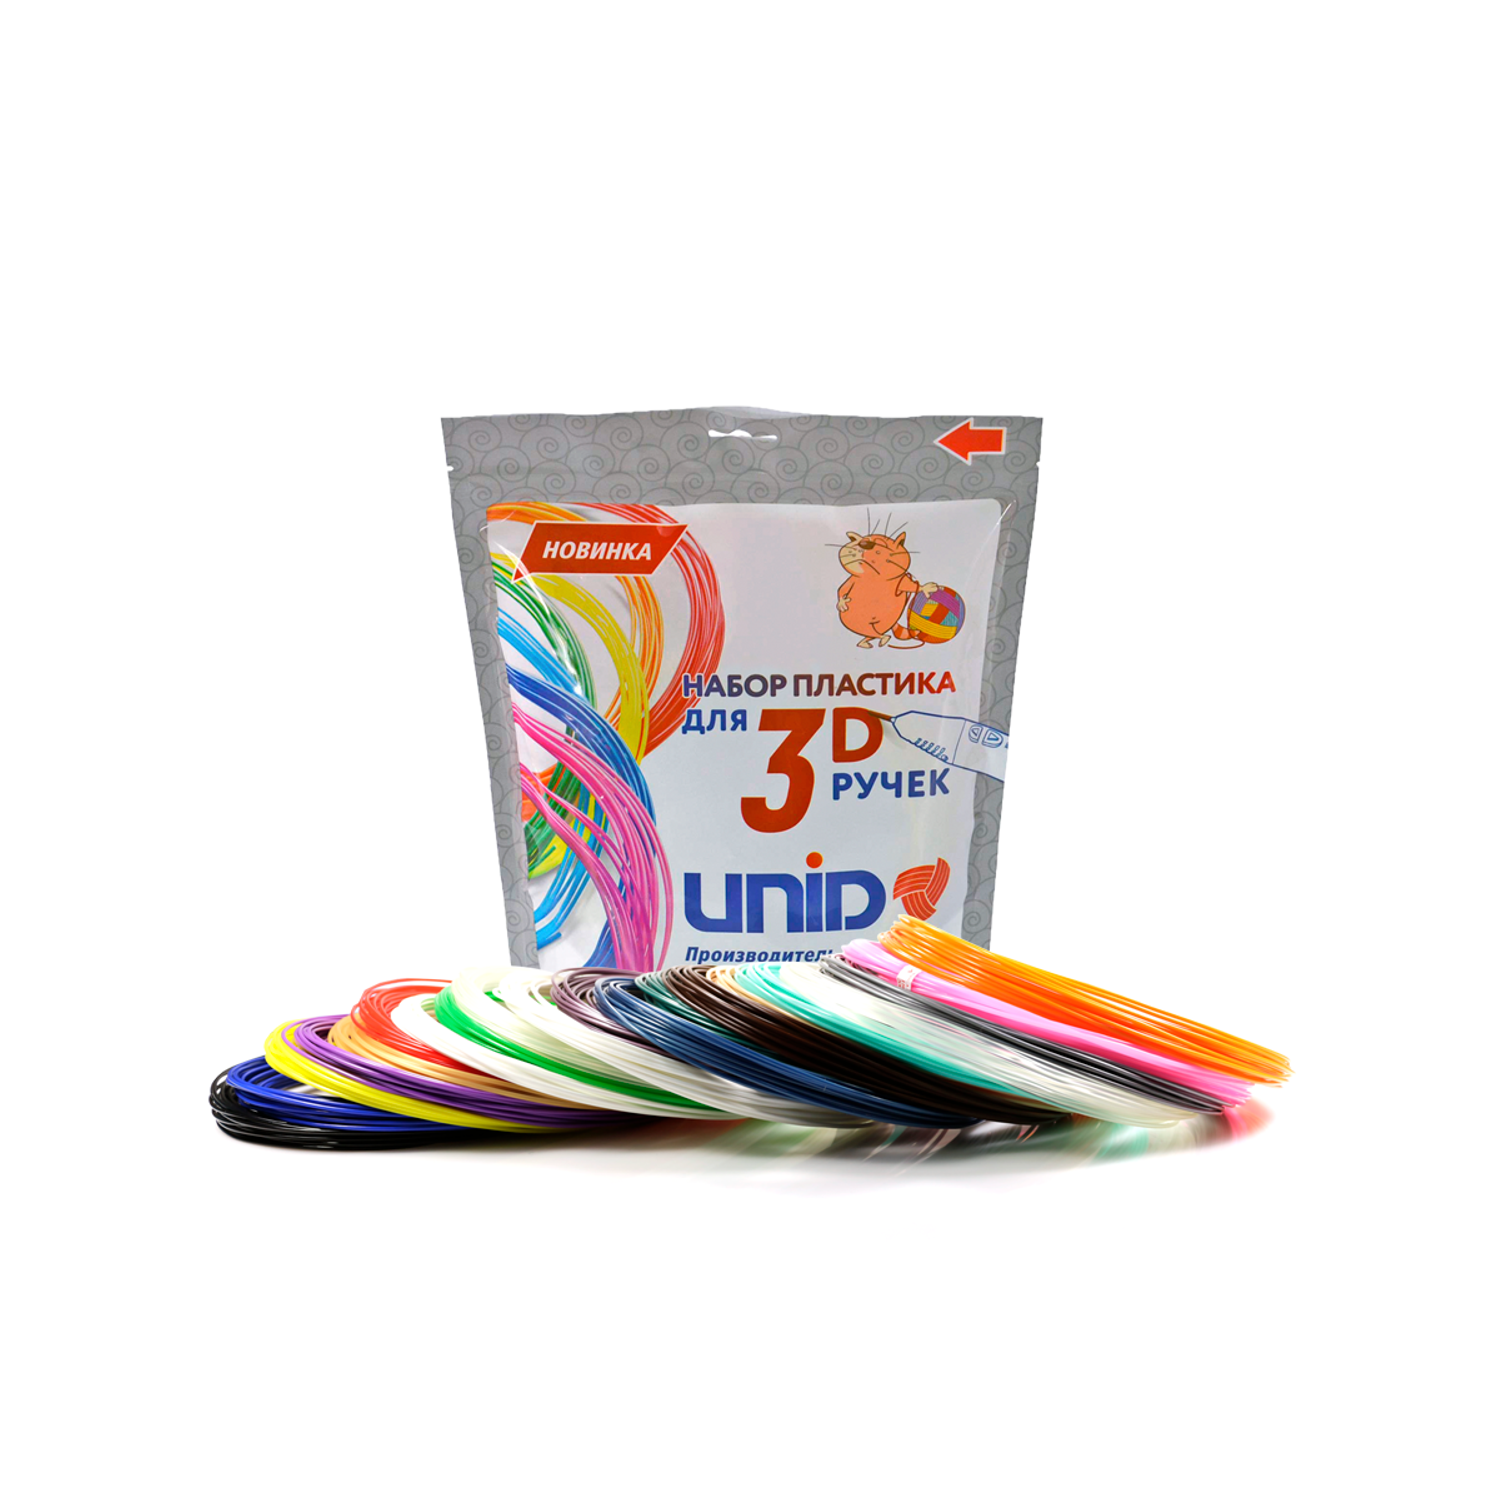 Пластик для 3д ручки UNID PLA20 - фото 1